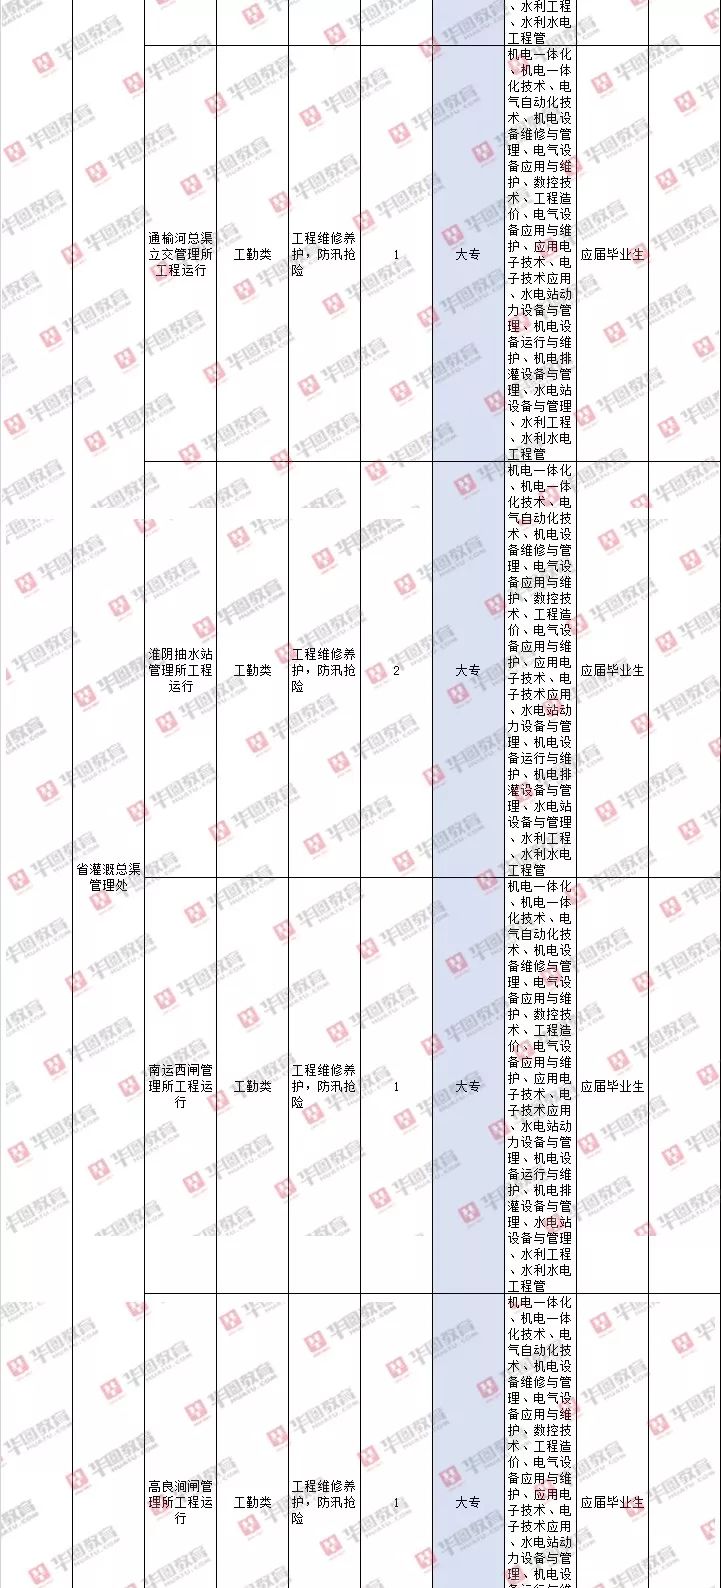 2019江苏事业单位统考即将报名:户籍限制 | 专